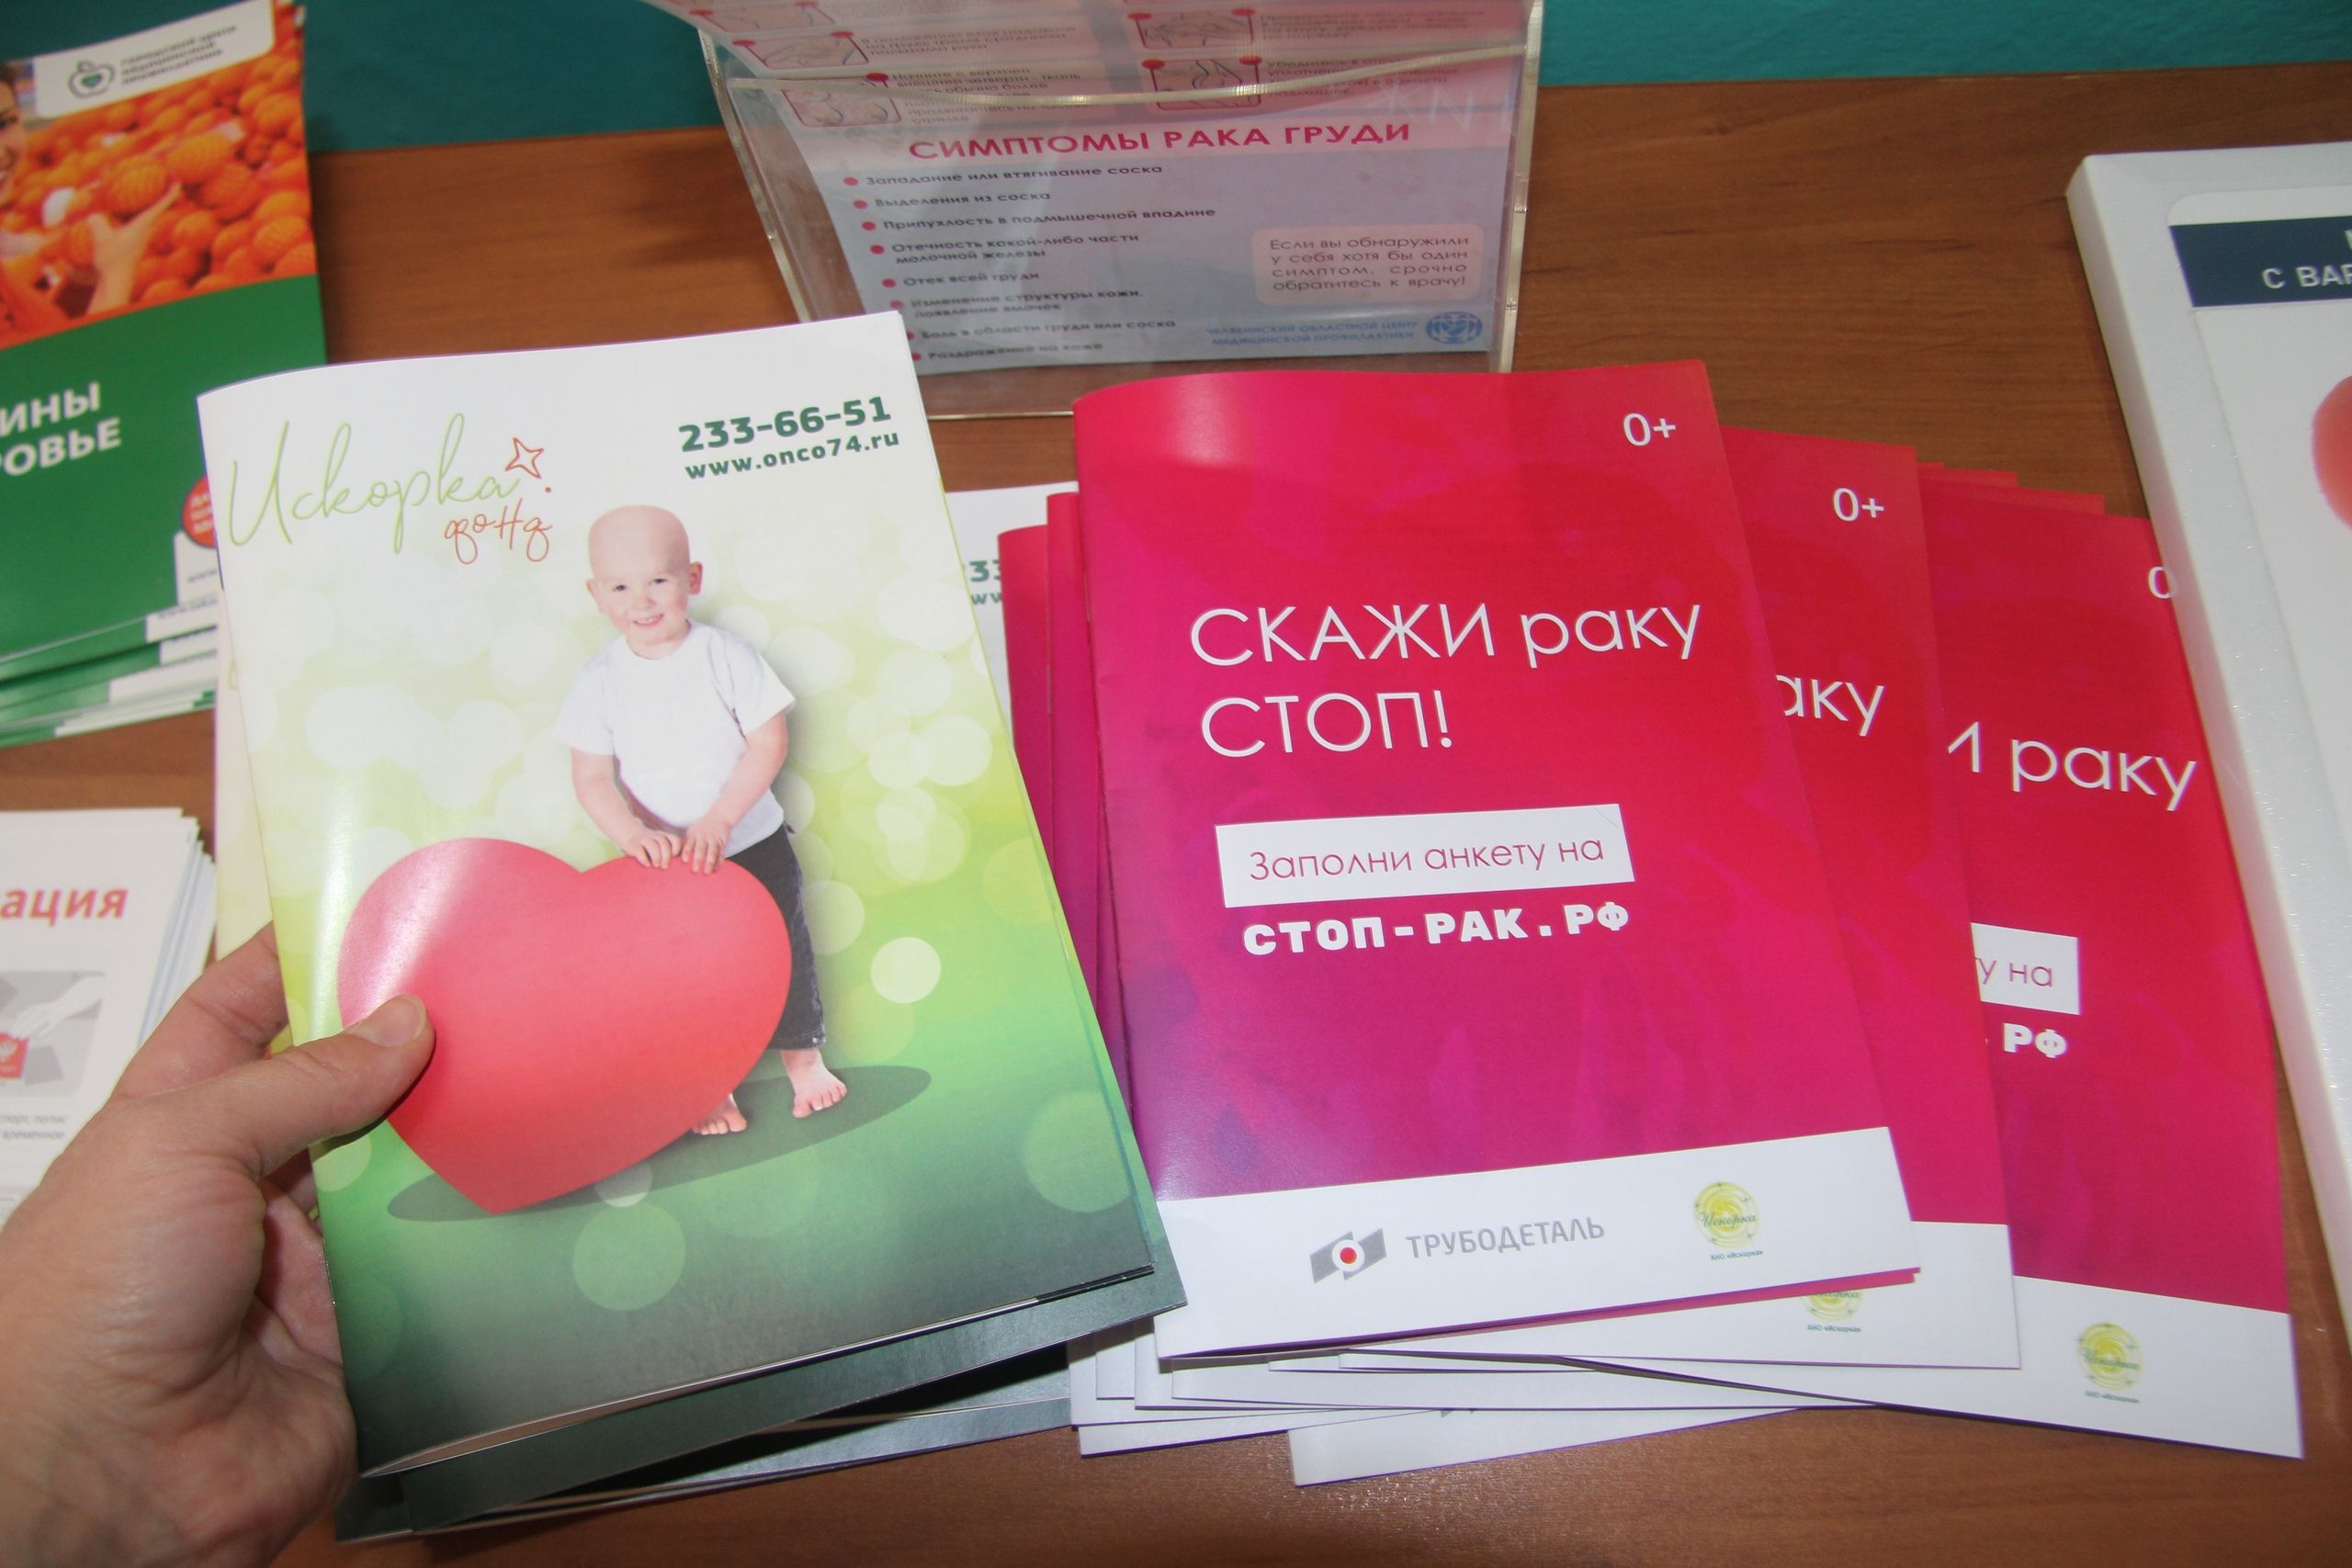 В Челябинске можно бесплатно получить брошюру «Скажи раку СТОП!»